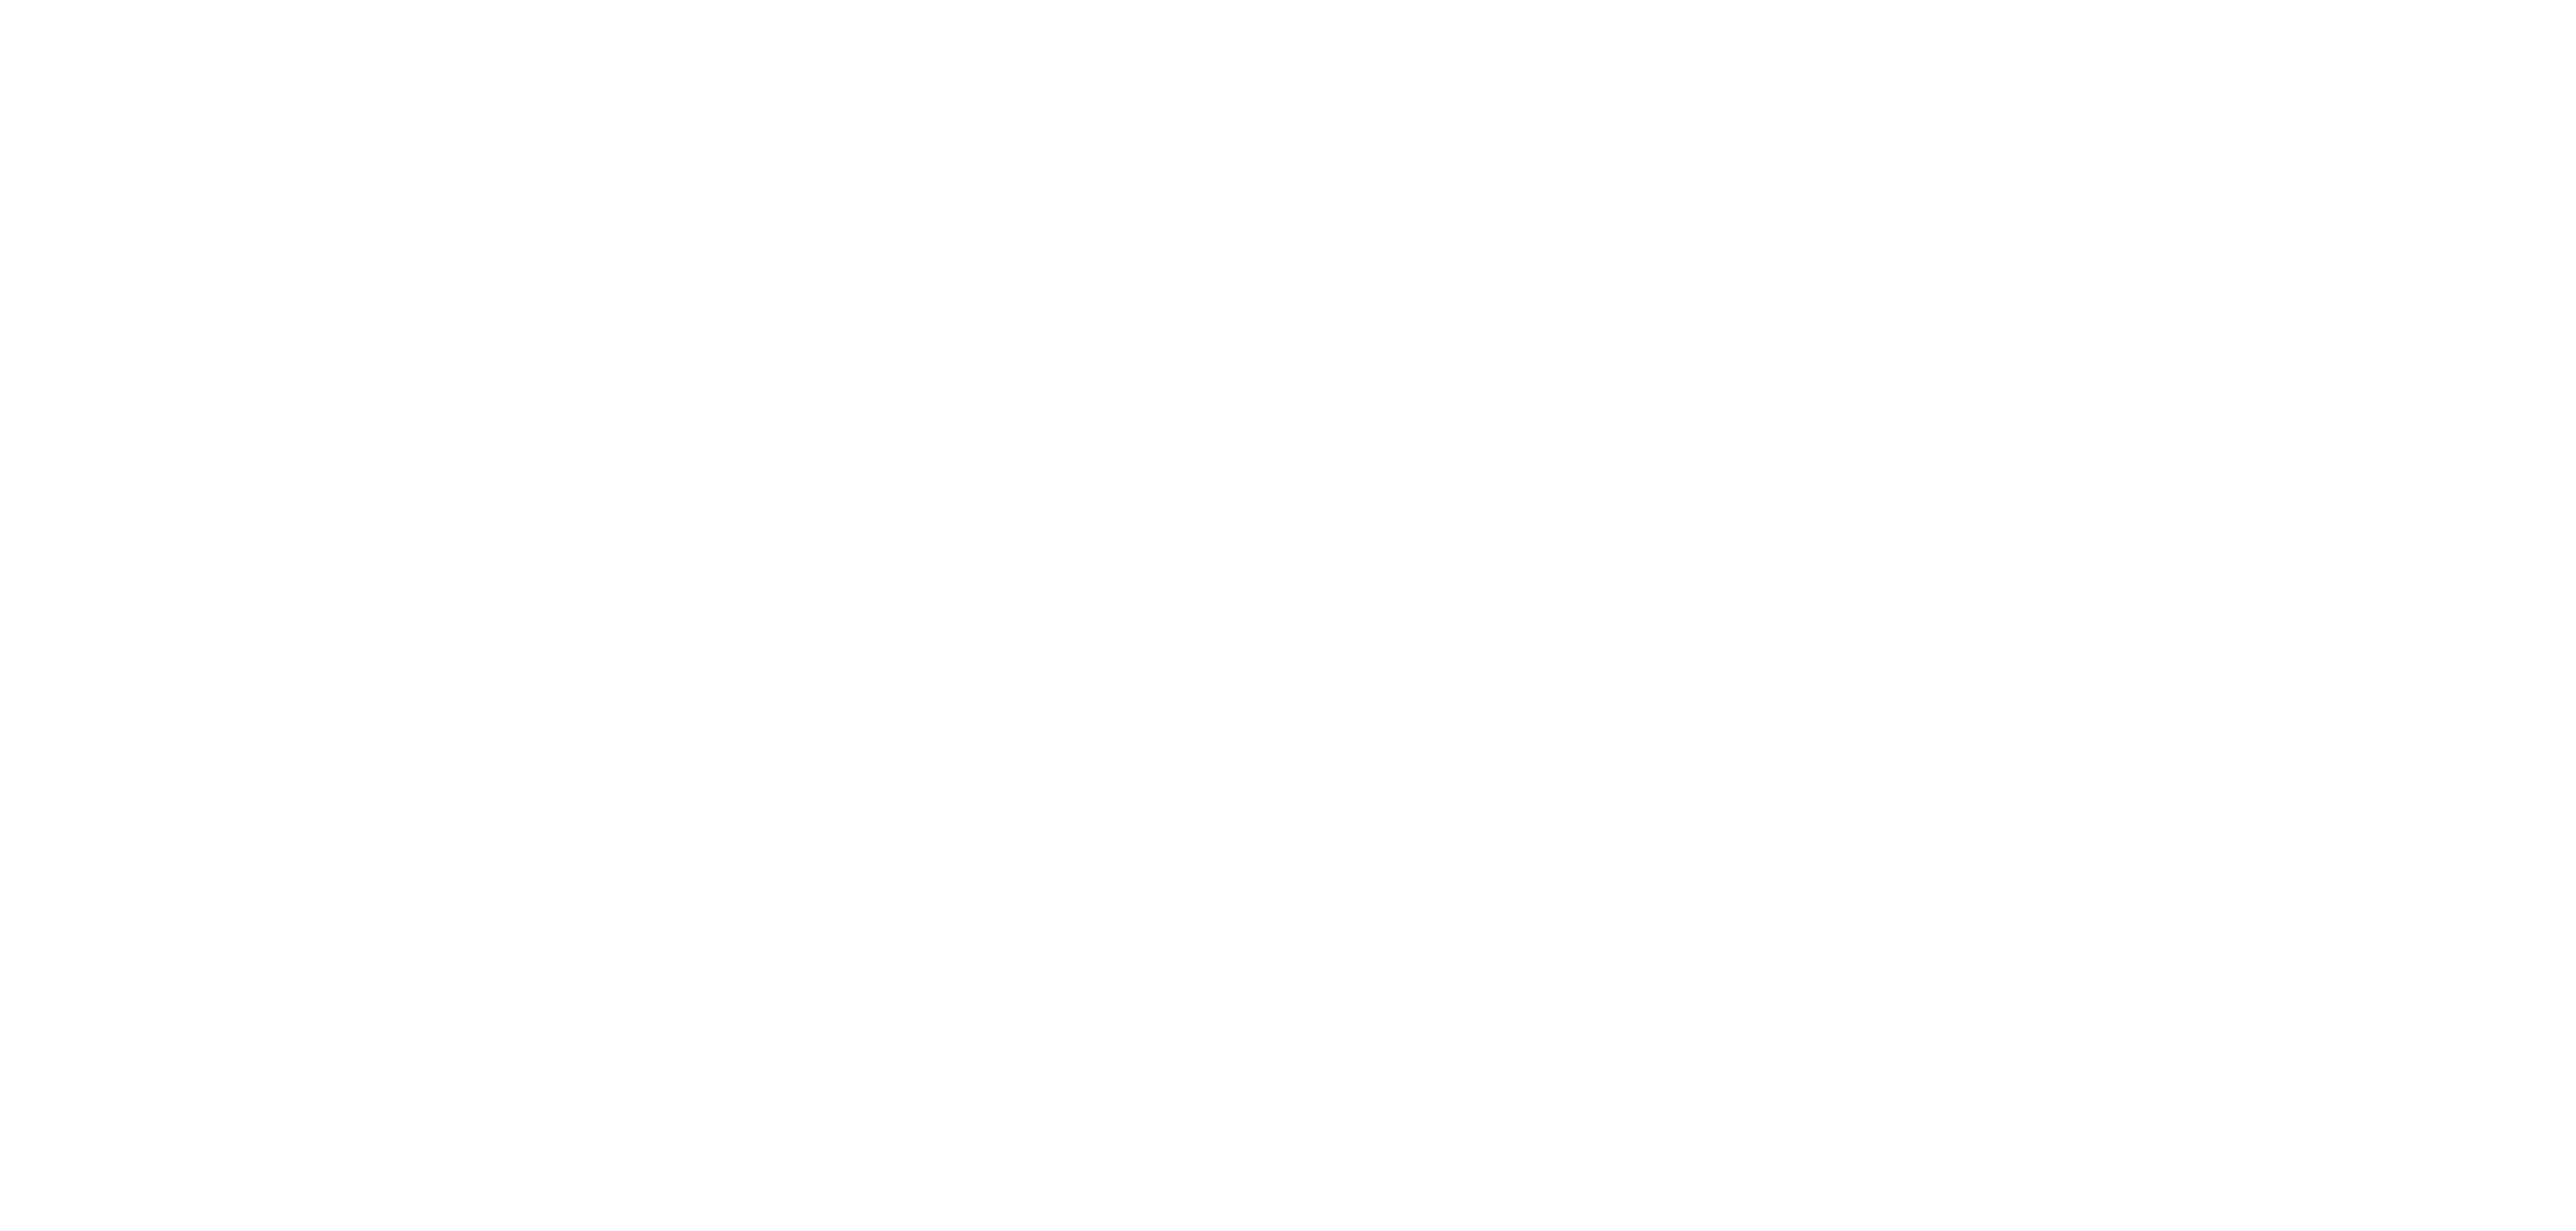 Timstar logo